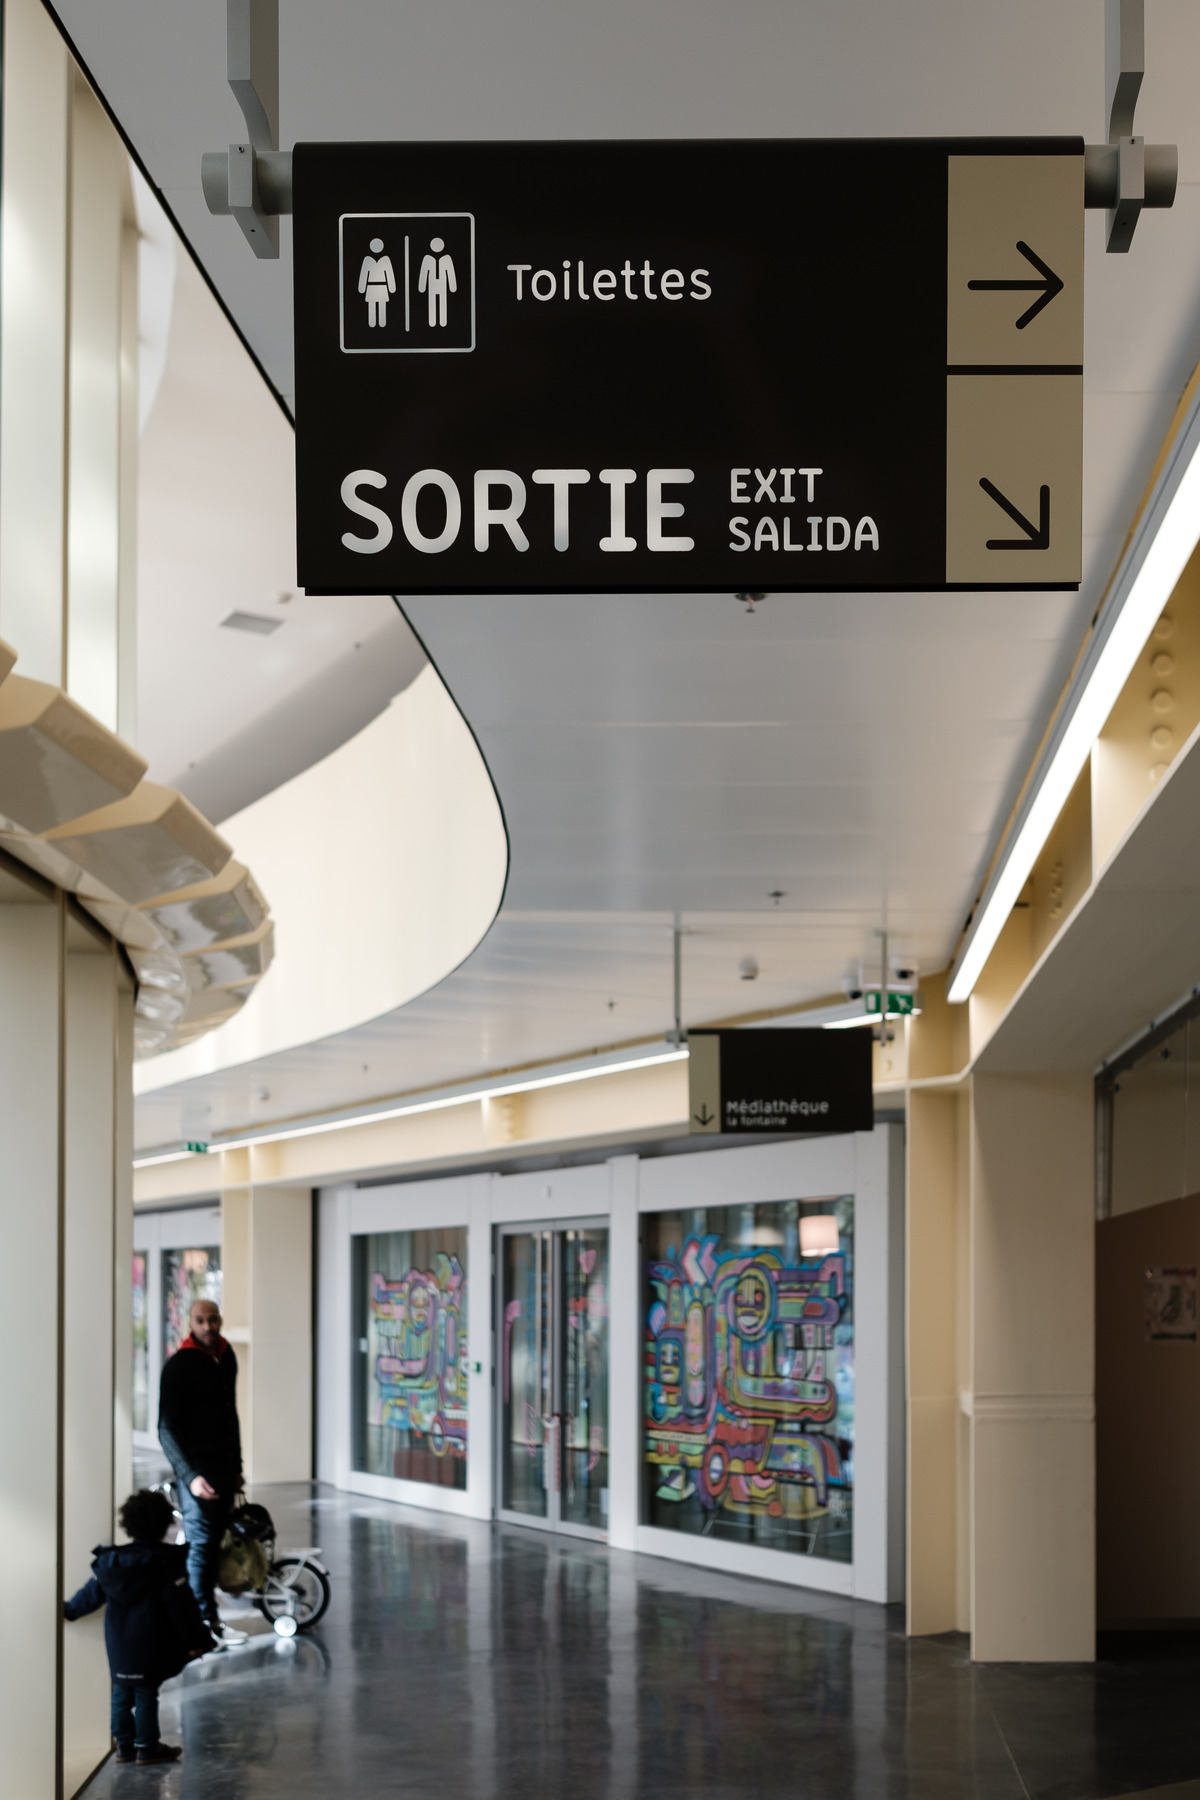 Les Halles食品市场导视系统设计©André Baldinger & Toan Vu-Huu & Agathe Demay